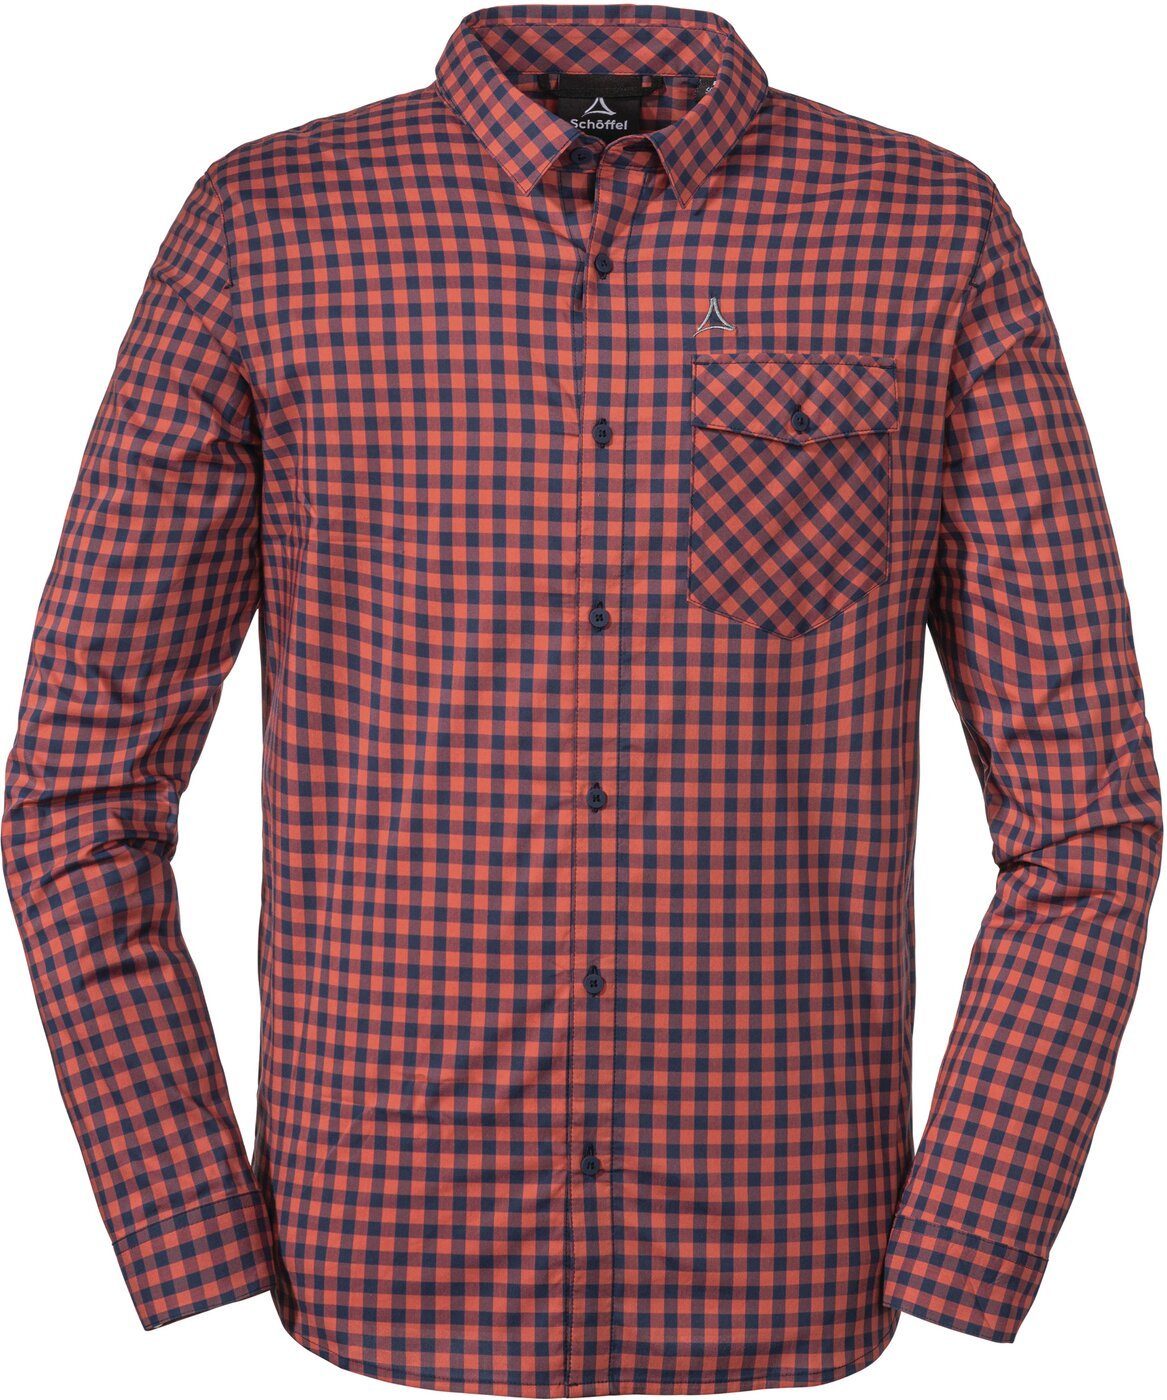 Schöffel Hemden für Herren online kaufen | OTTO